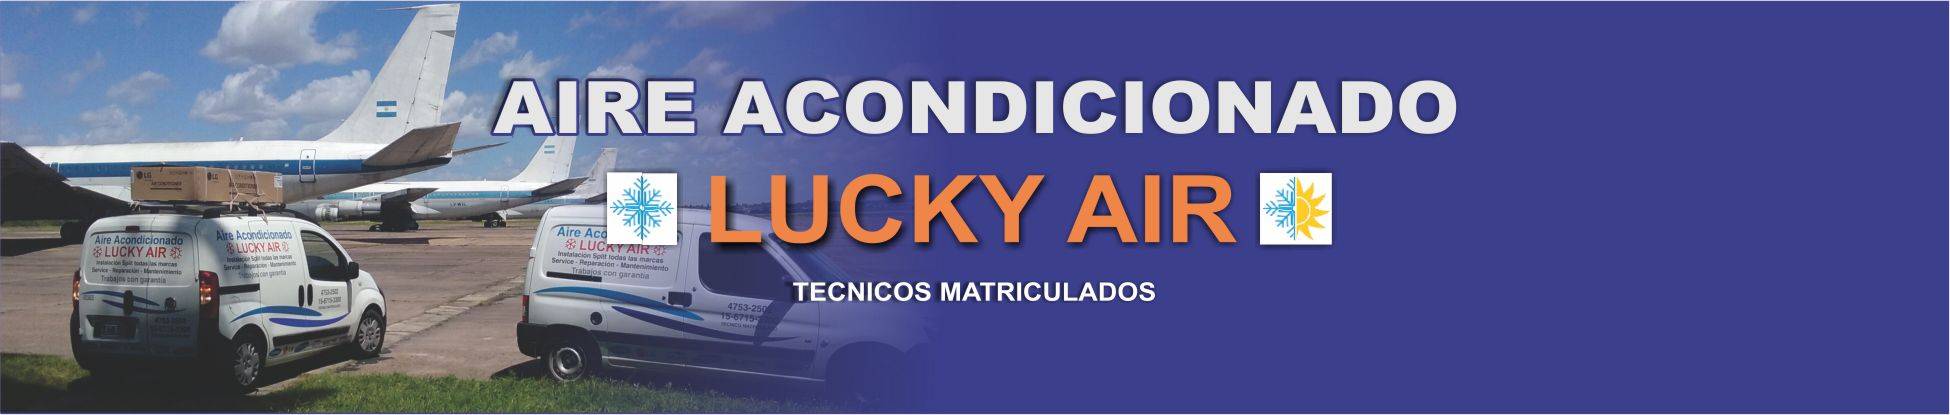 Lucky Air